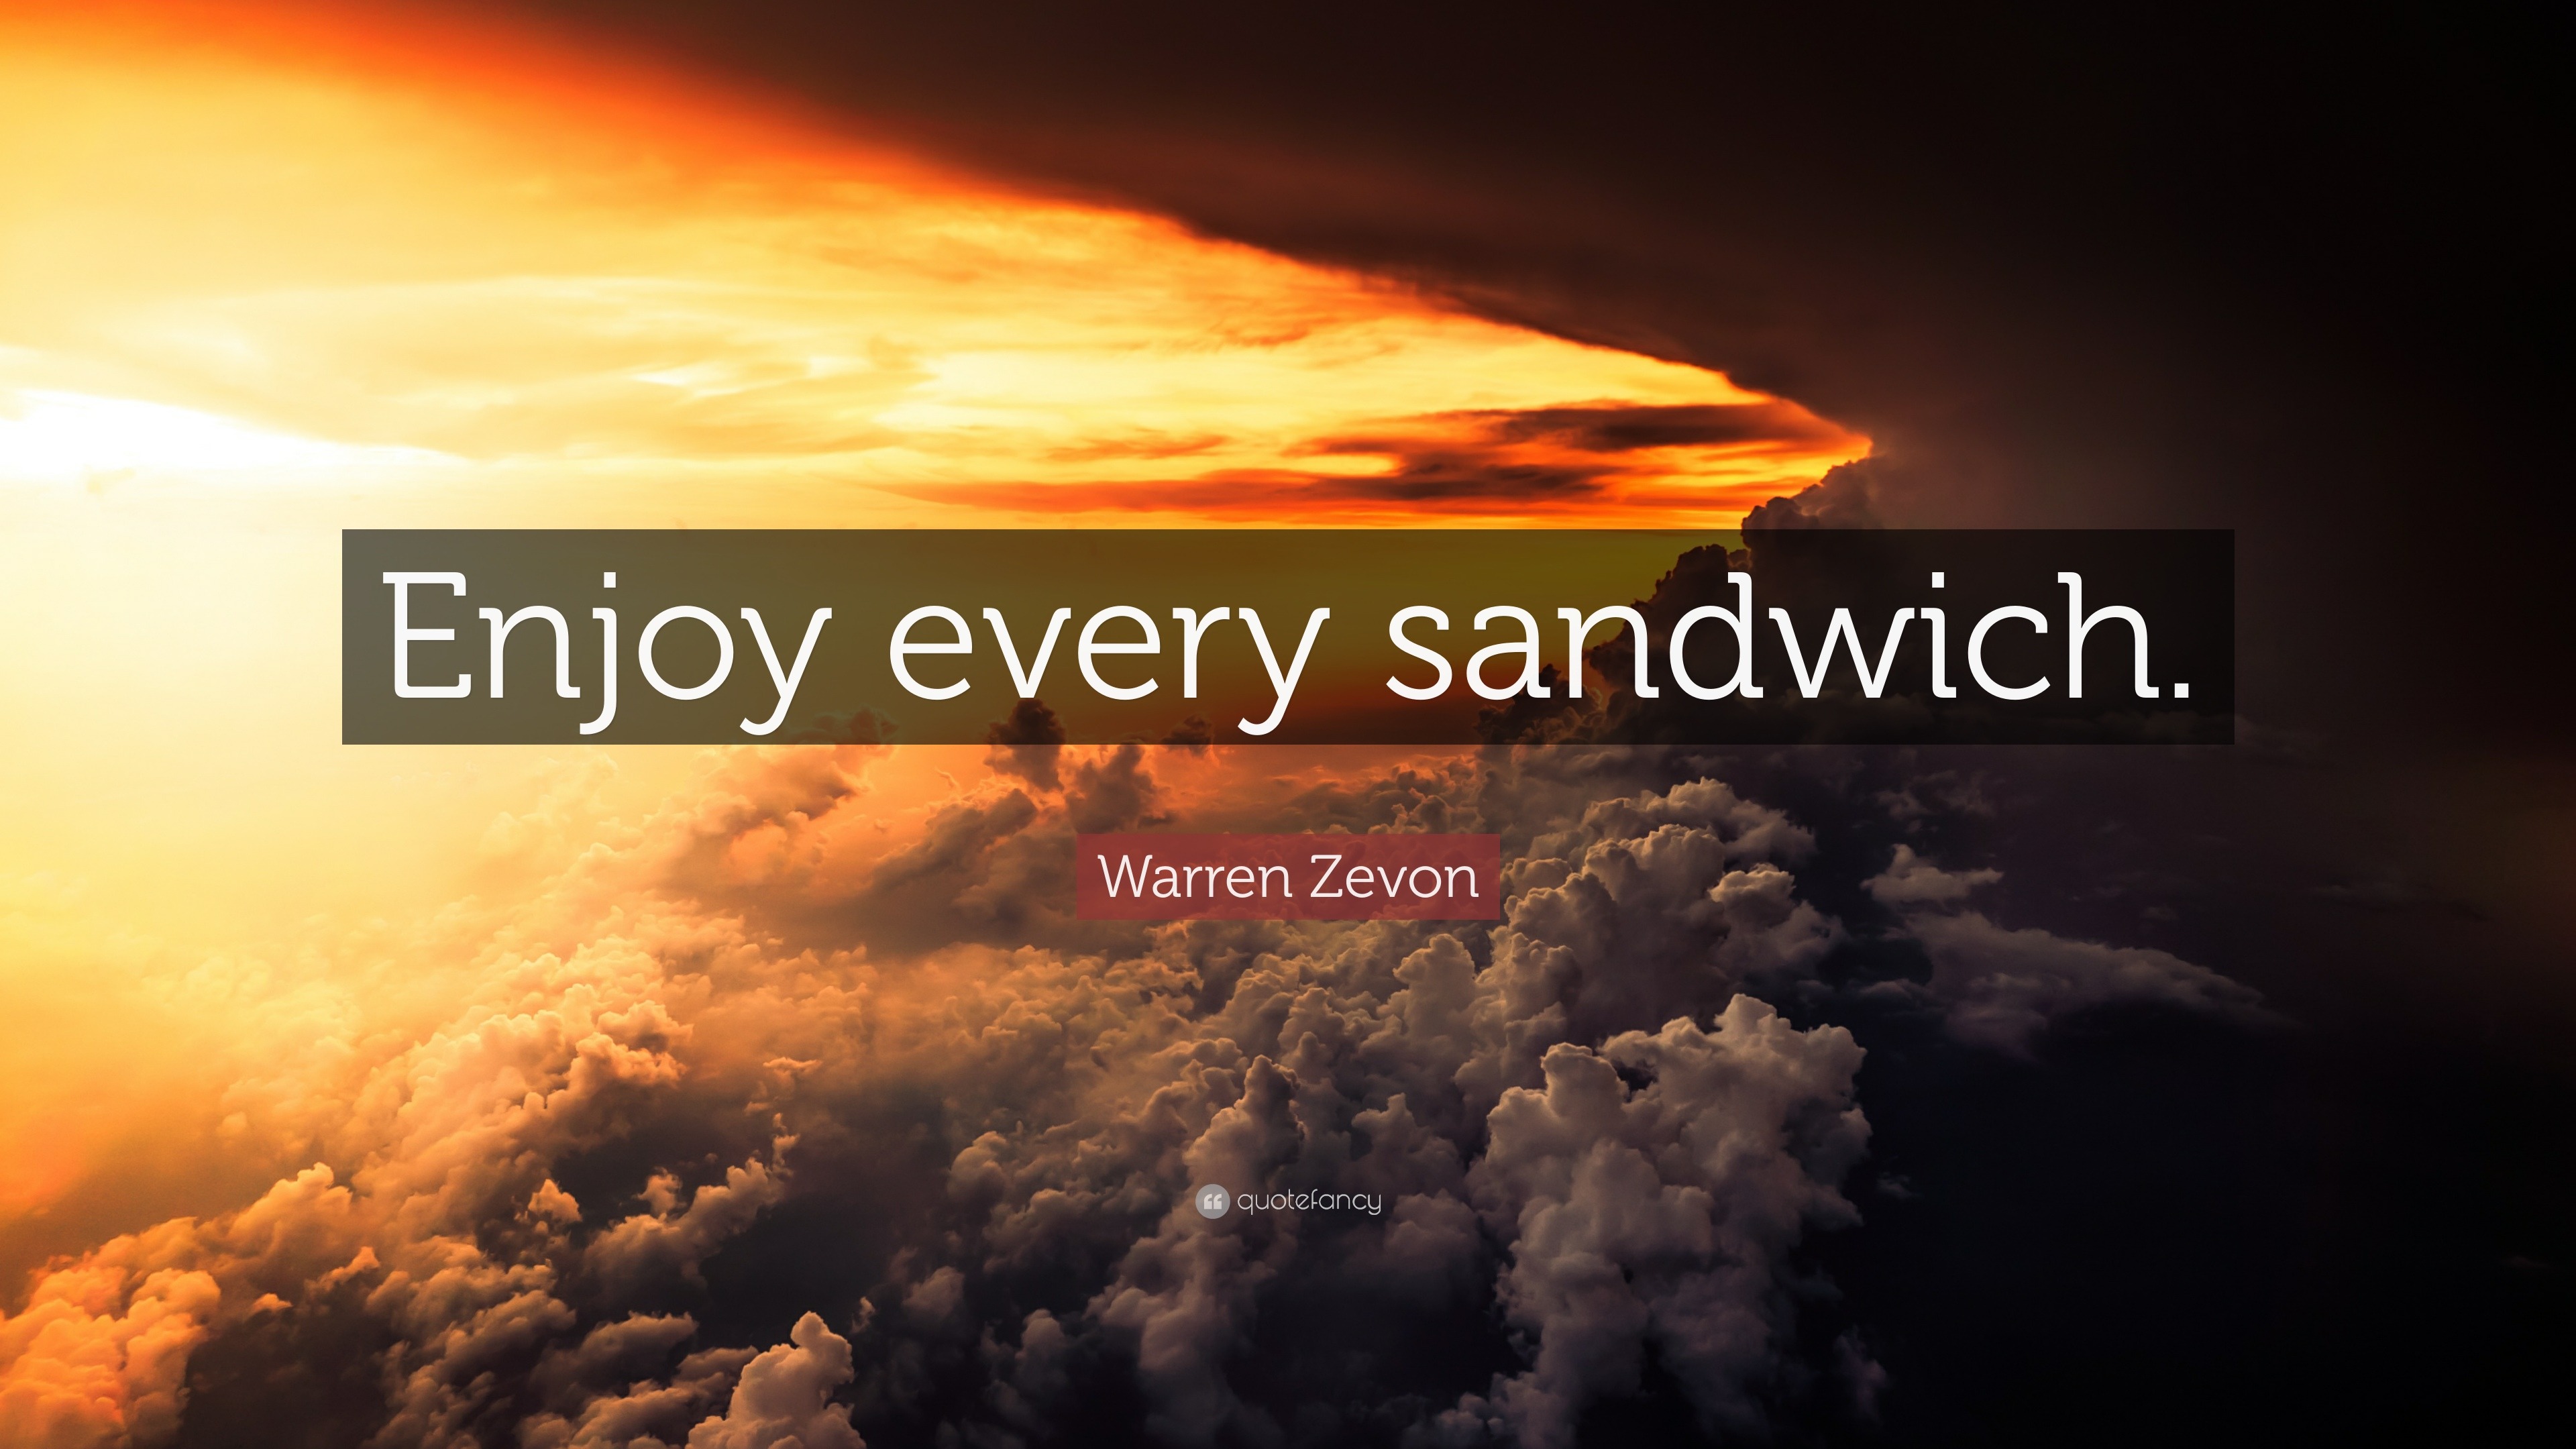 enjoy every sandwich songs of warren zevon